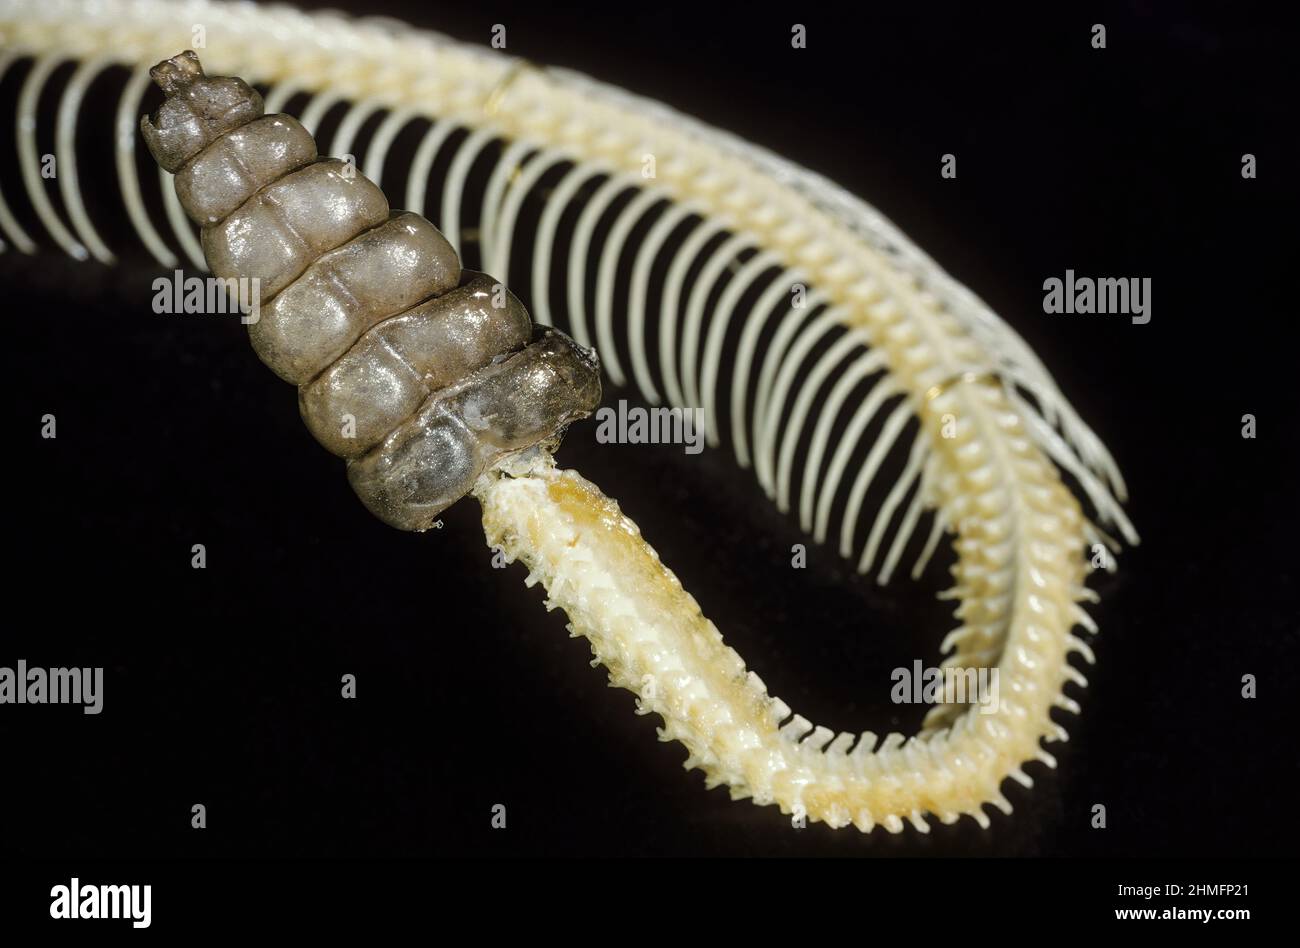 Rattlesnake rattle and vertebrate skeleton. Stock Photo